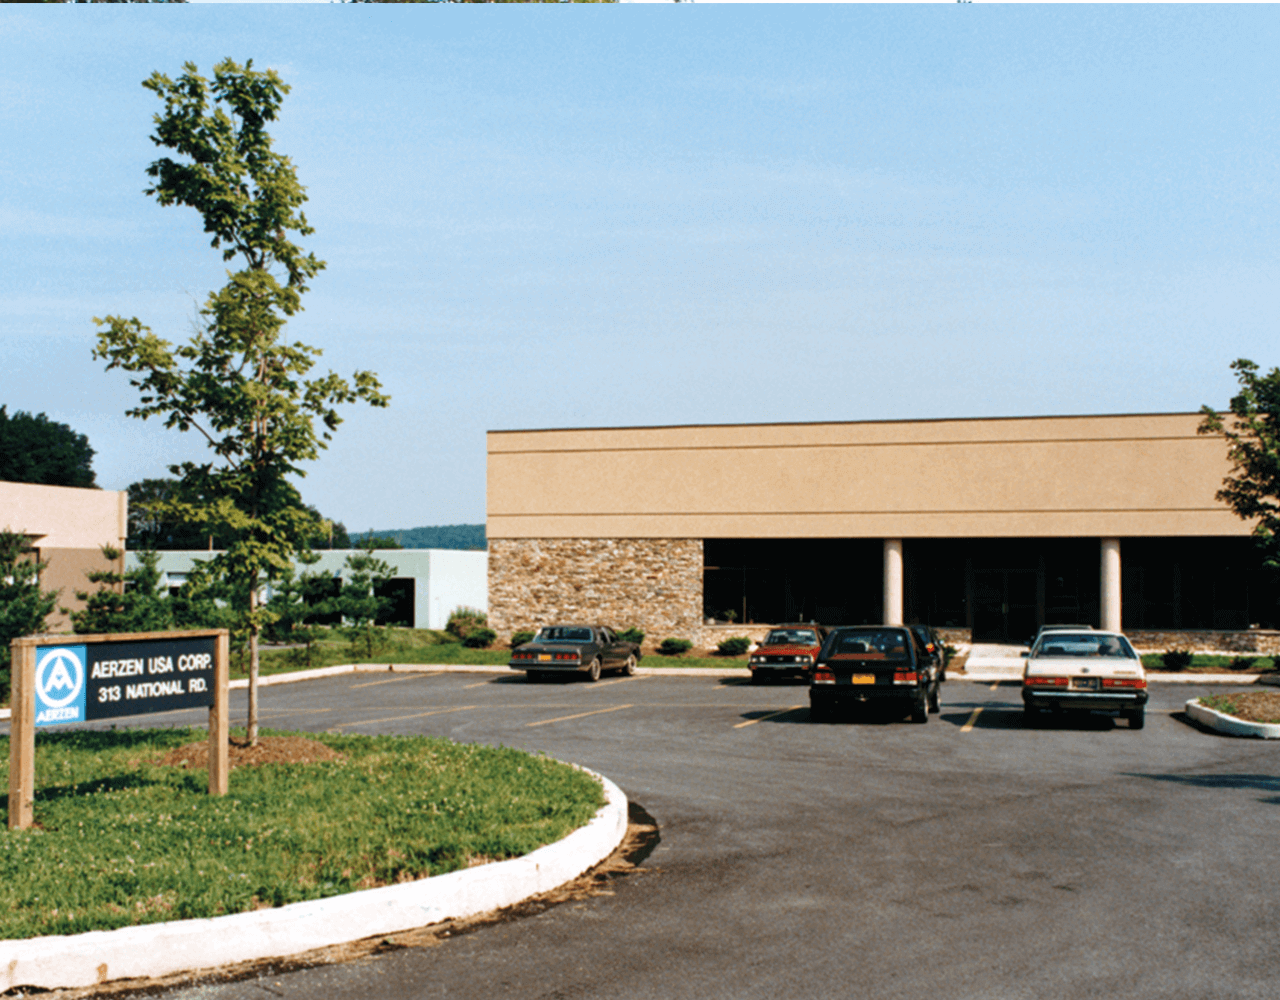 Imaginea clădirii filialei Aerzen USA Corporation